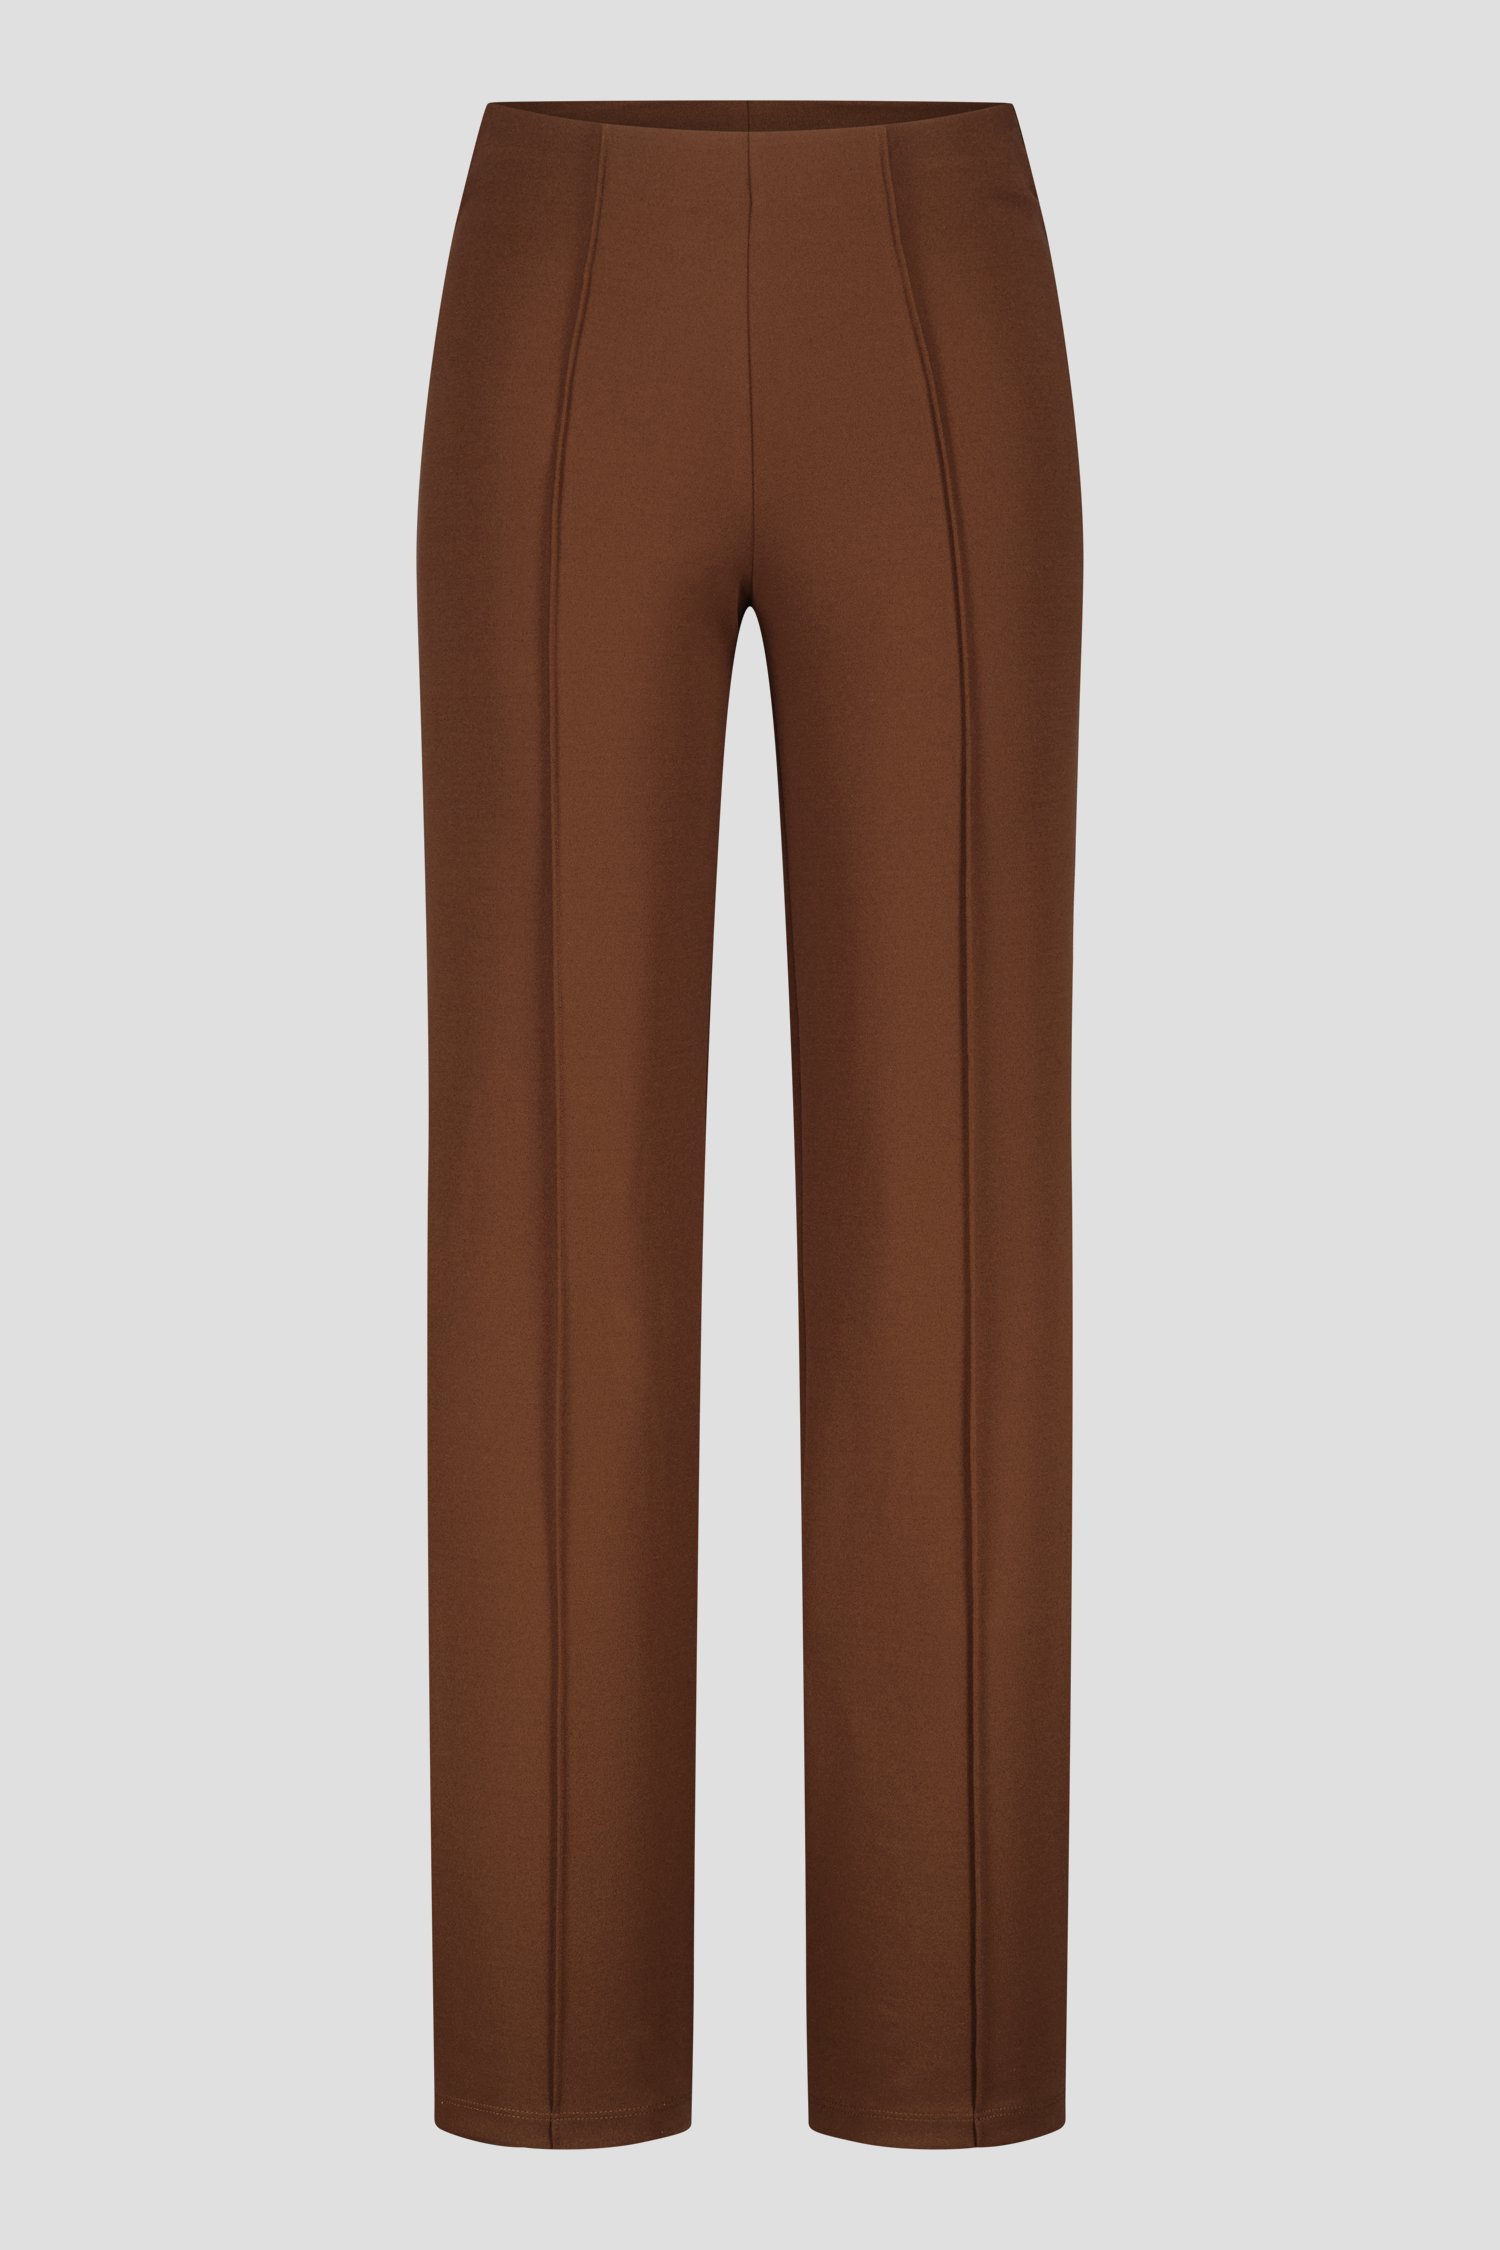 Pantalon marron avec stretch de Liberty Island pour Femmes